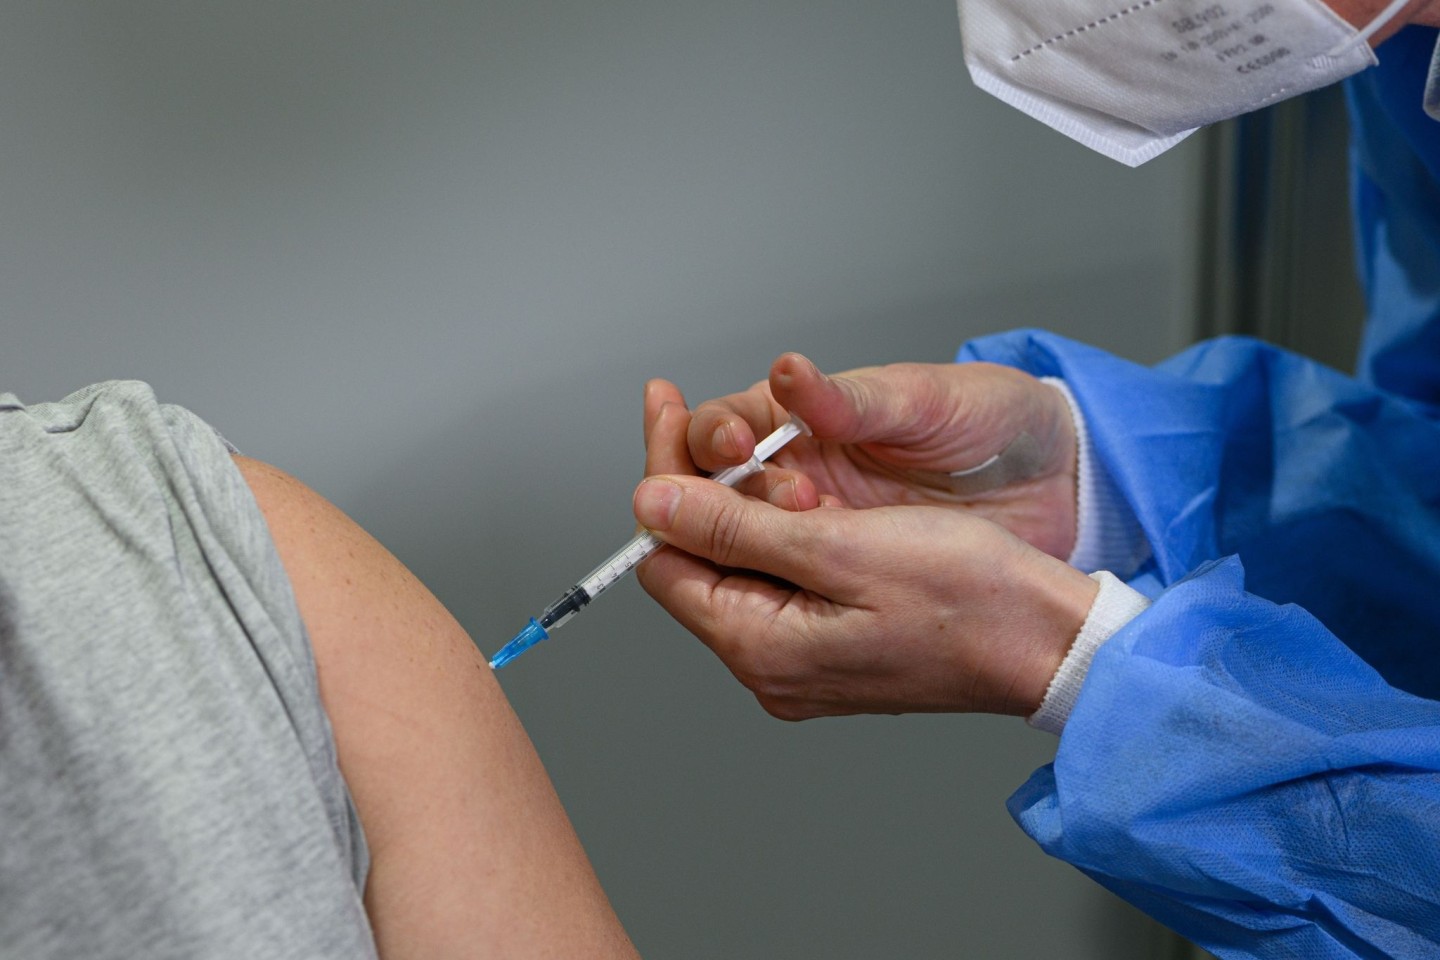 Ein Impfling lässt sich im Impfzentrum mit dem Corona-Impfstoff von Novavax impfen. (zu dpa «Standardimpfungen rückläufig in Sachsen - Plus bei anderen»)